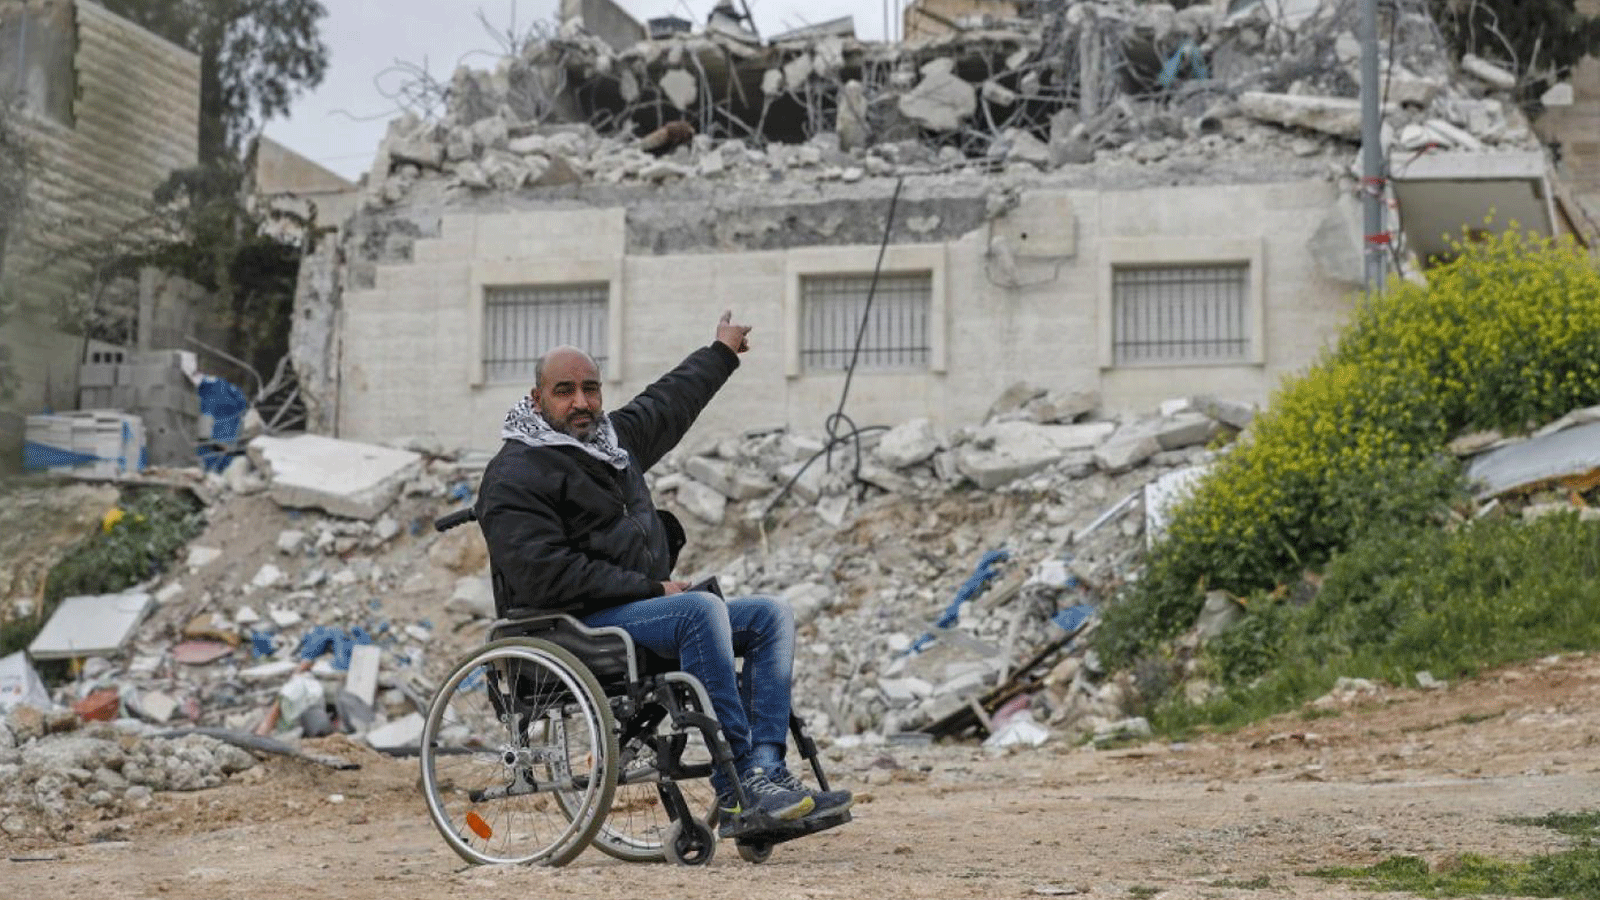 الفلسطيني حاتم حسين أبو ريالة يشير إلى منزله الذي هدمته القوات الإسرائيلية مرة أخرى في حي العيسوية بالقدس الشرقية. 1 آذار/ مارس 2021